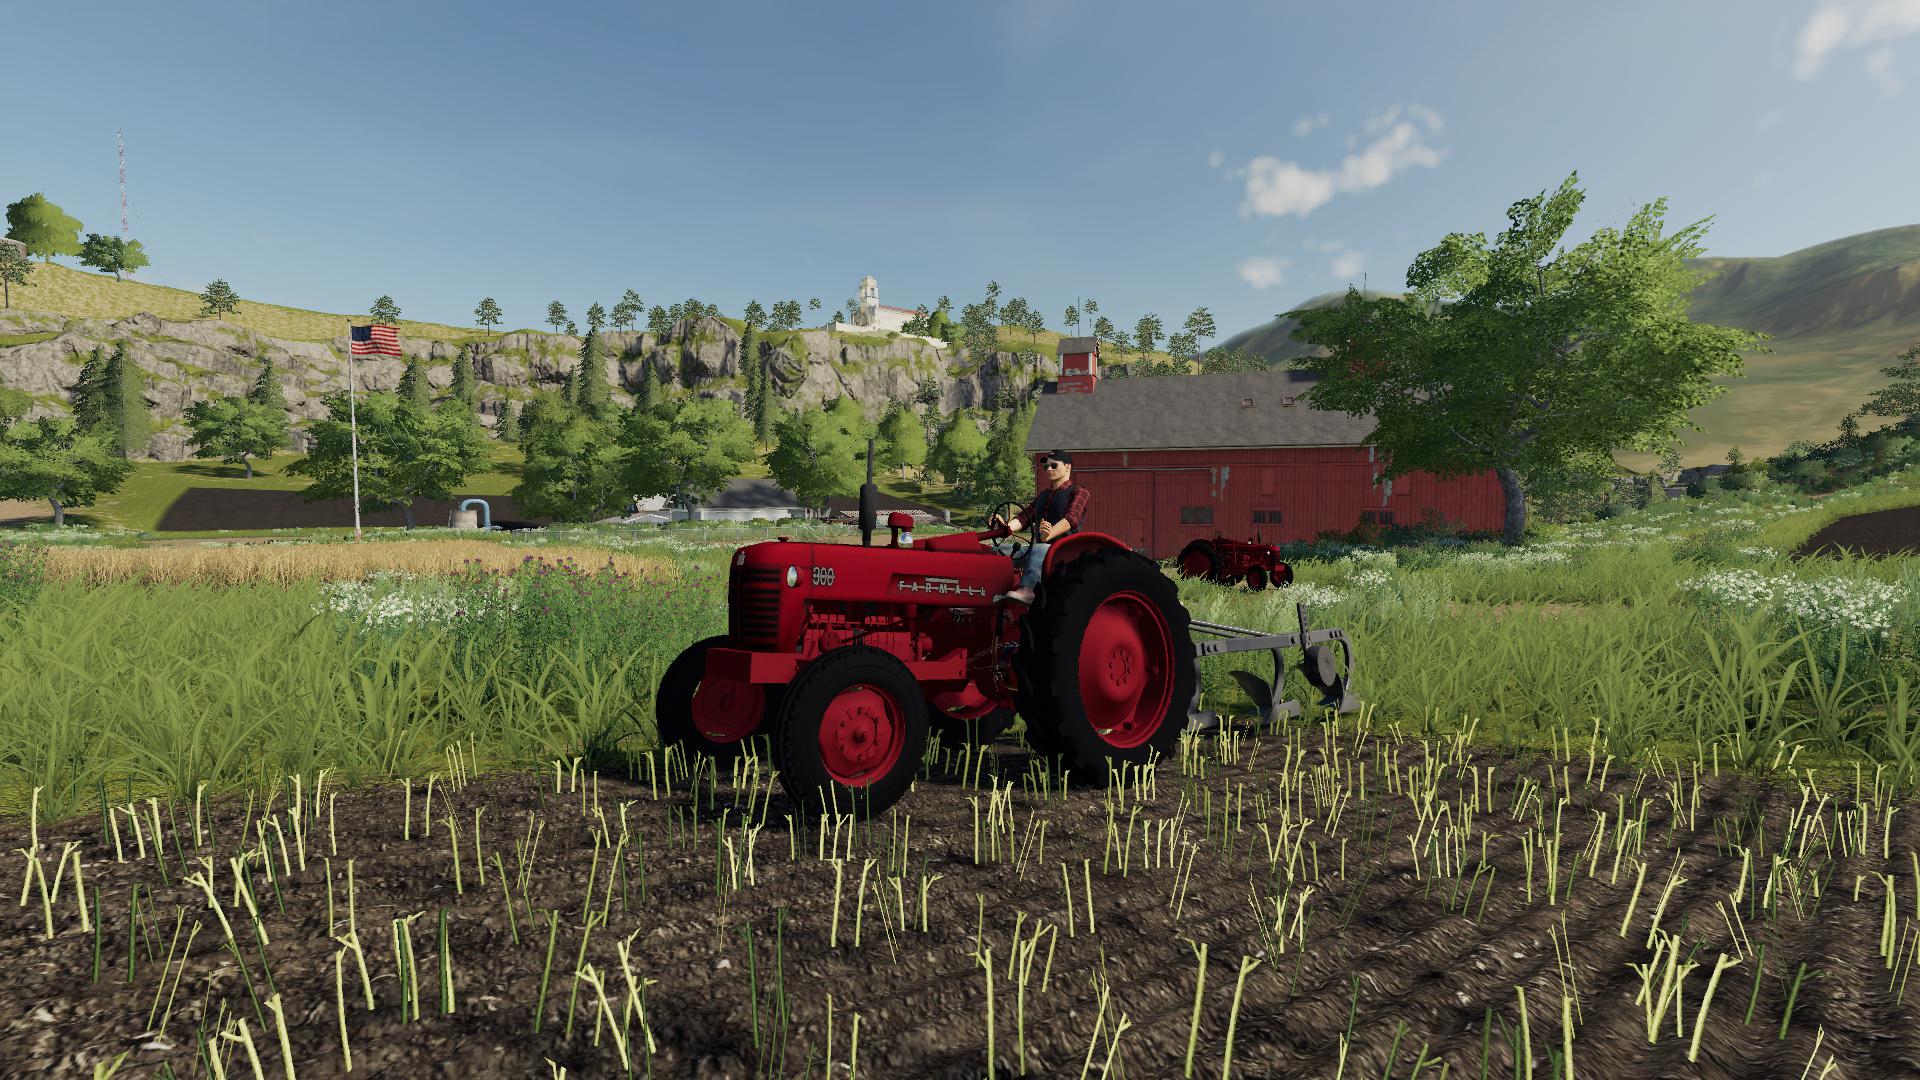 Fs19 International Harvester 300u V30 Farming Simulator 19 Modsclub 5299